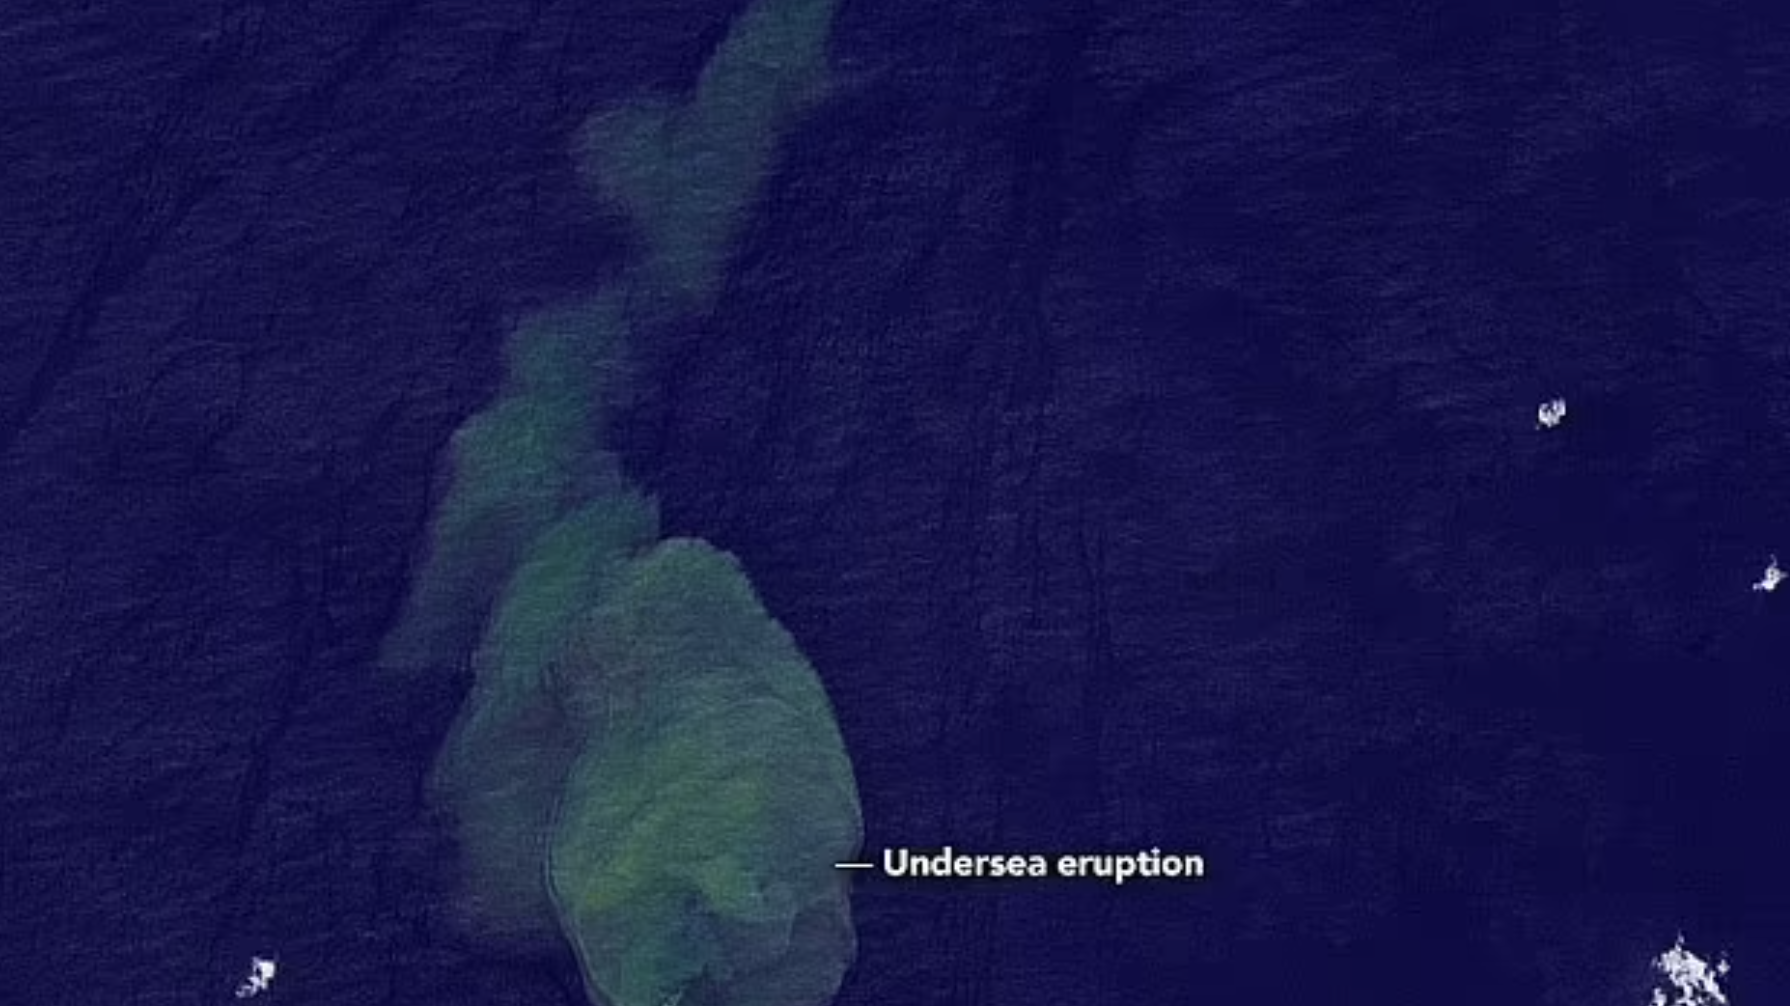 https://www.nationalgeographic.com/animals/article/sharks-underwater-volcano-sharkcano-kavachi